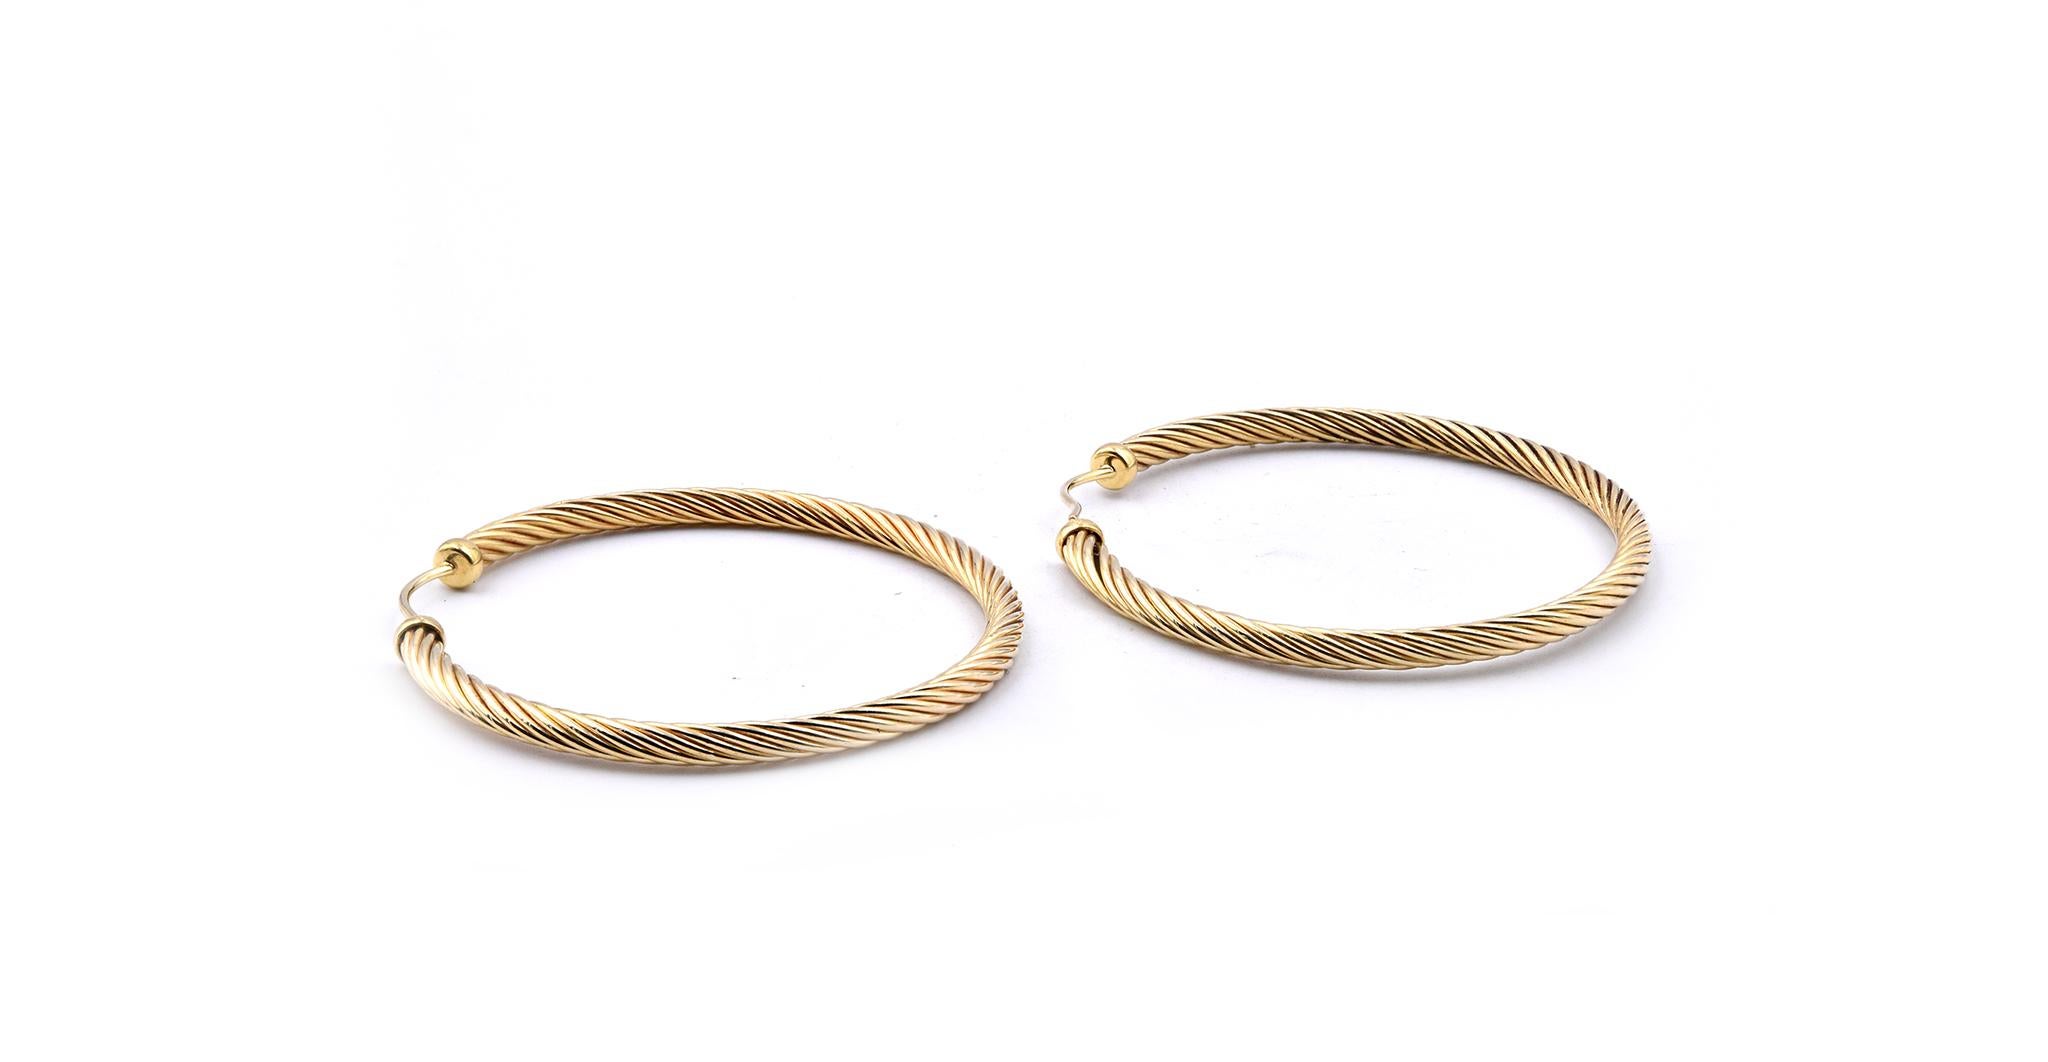 Designer: David Yurman
Material: 18K yellow gold
Weight: 8.93 grams
Measurement: earrings measure 45mm
